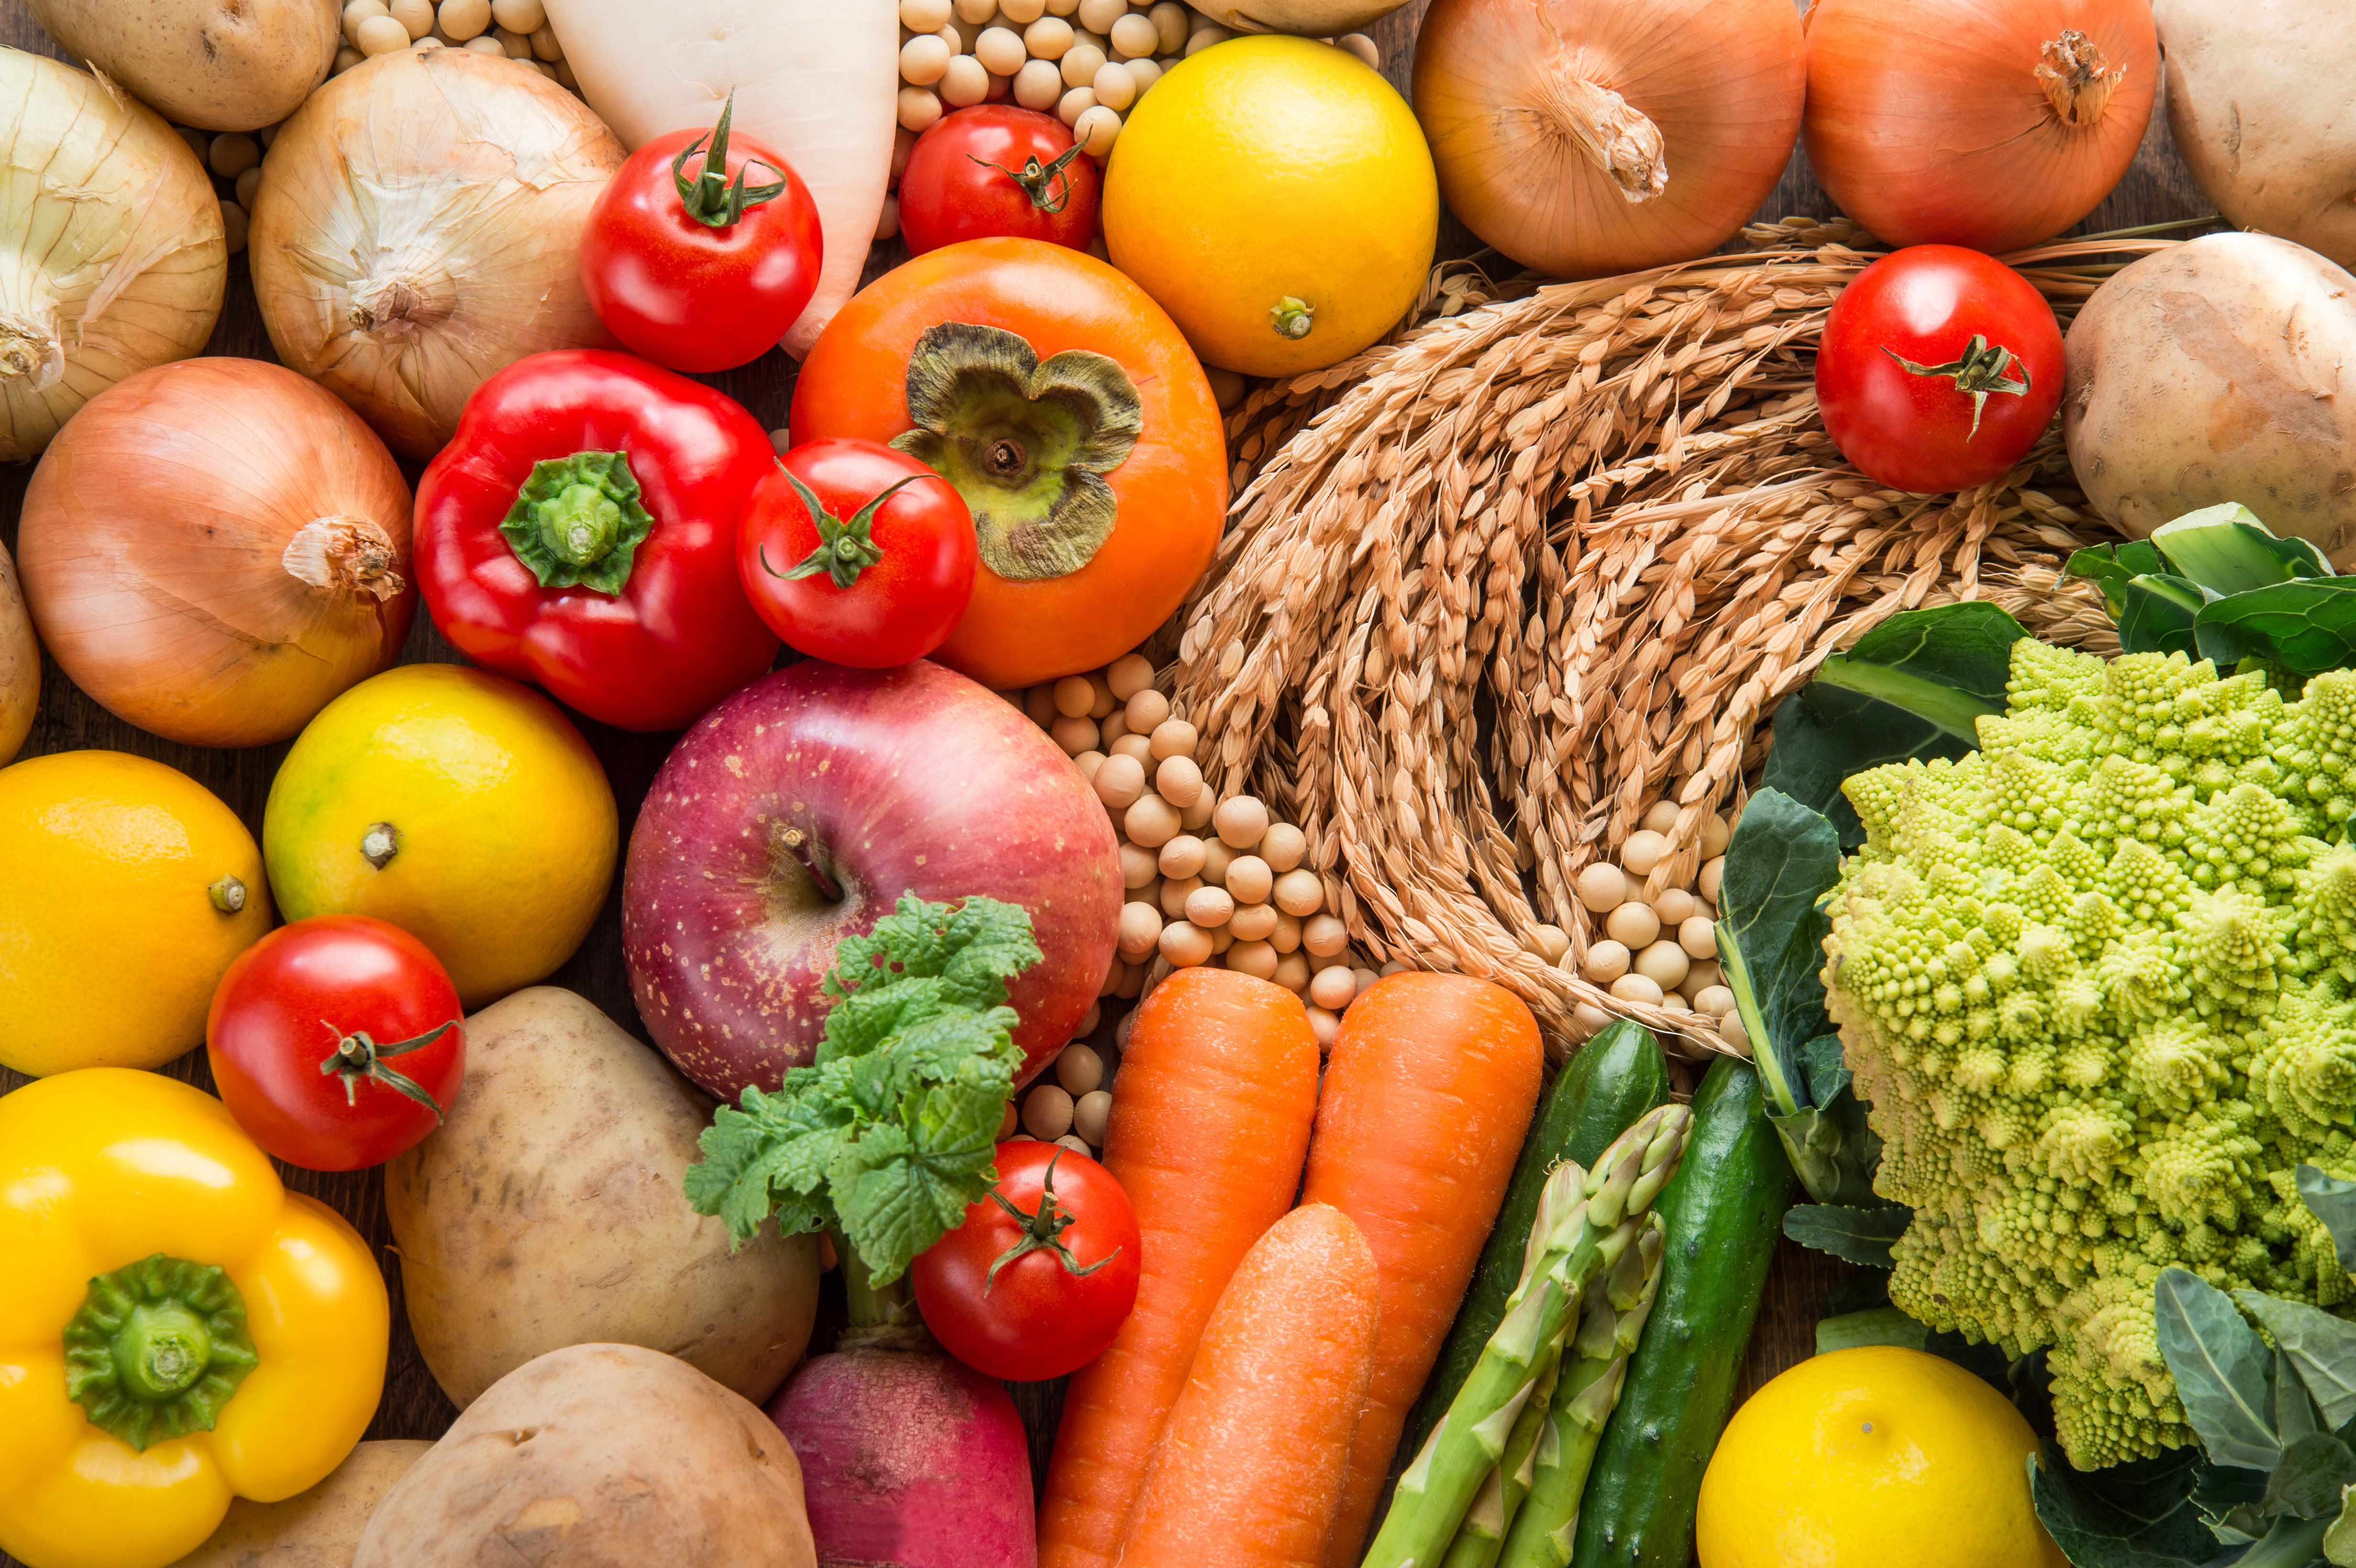 Lebensmittel (Obst, Gemüse, Getreide) zusammengestellt auf einer Fläche